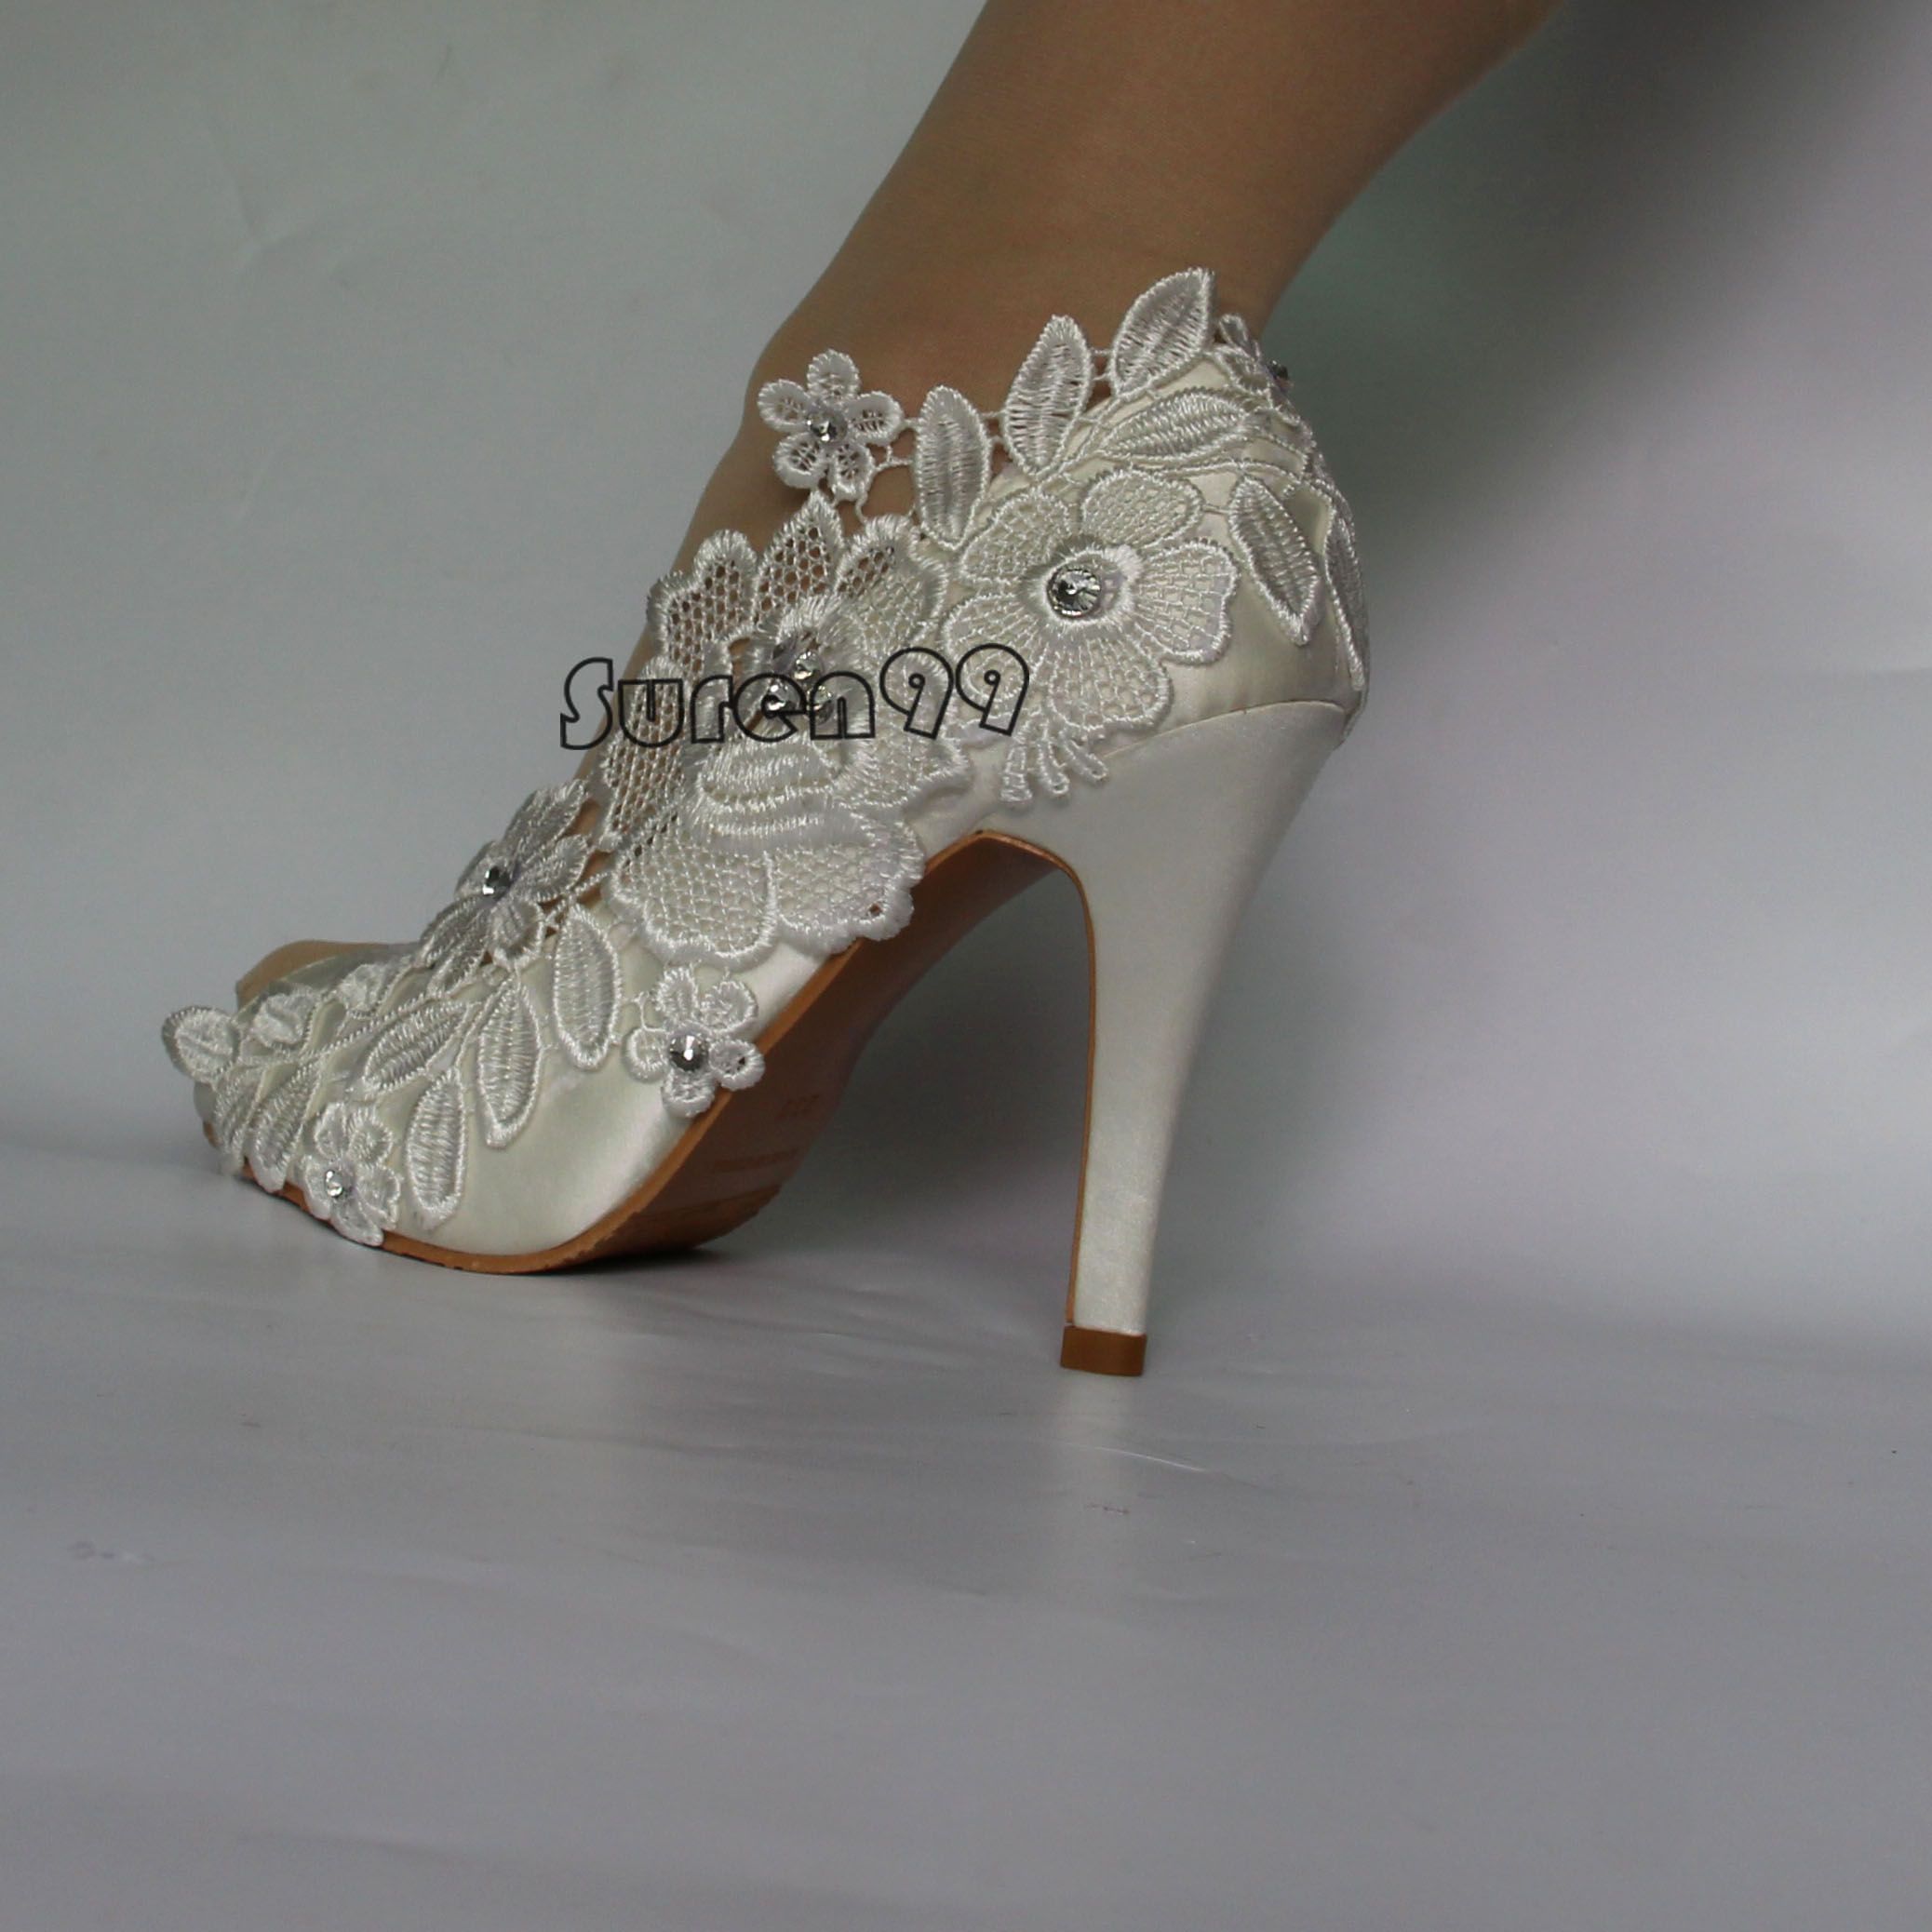 large size bridal shoes